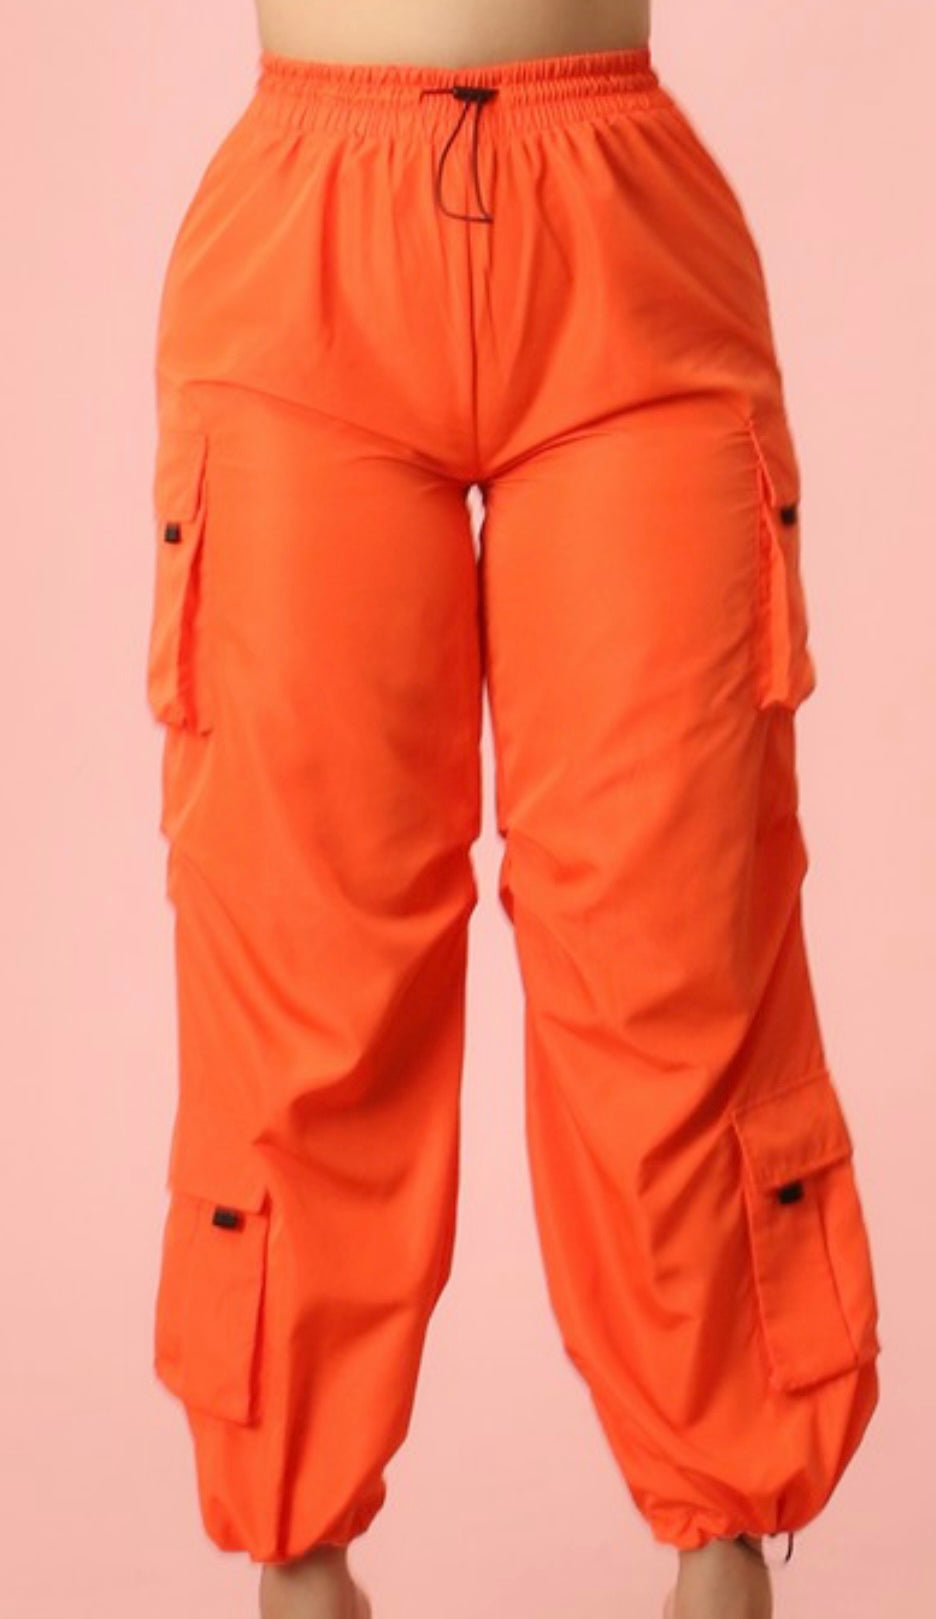 Tangerine Cargo pants